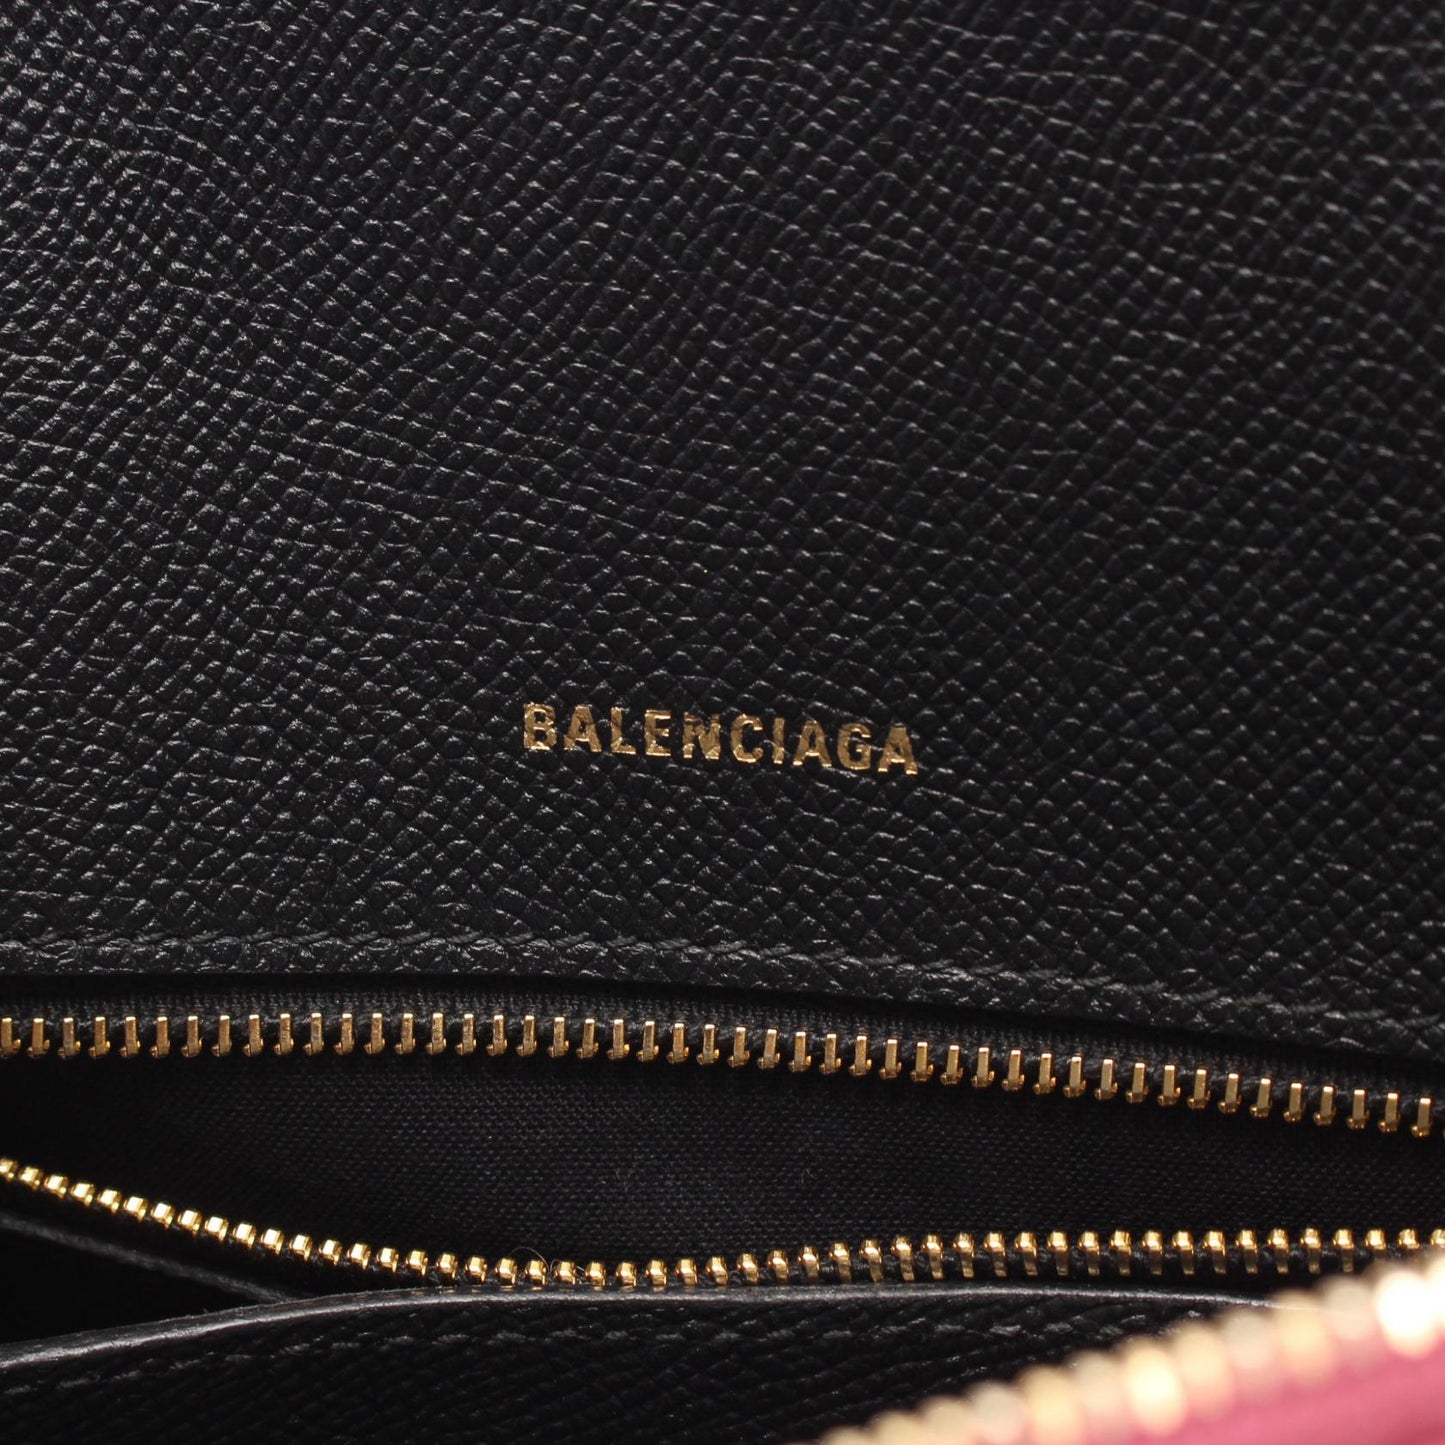 Balenciaga Hand Bag